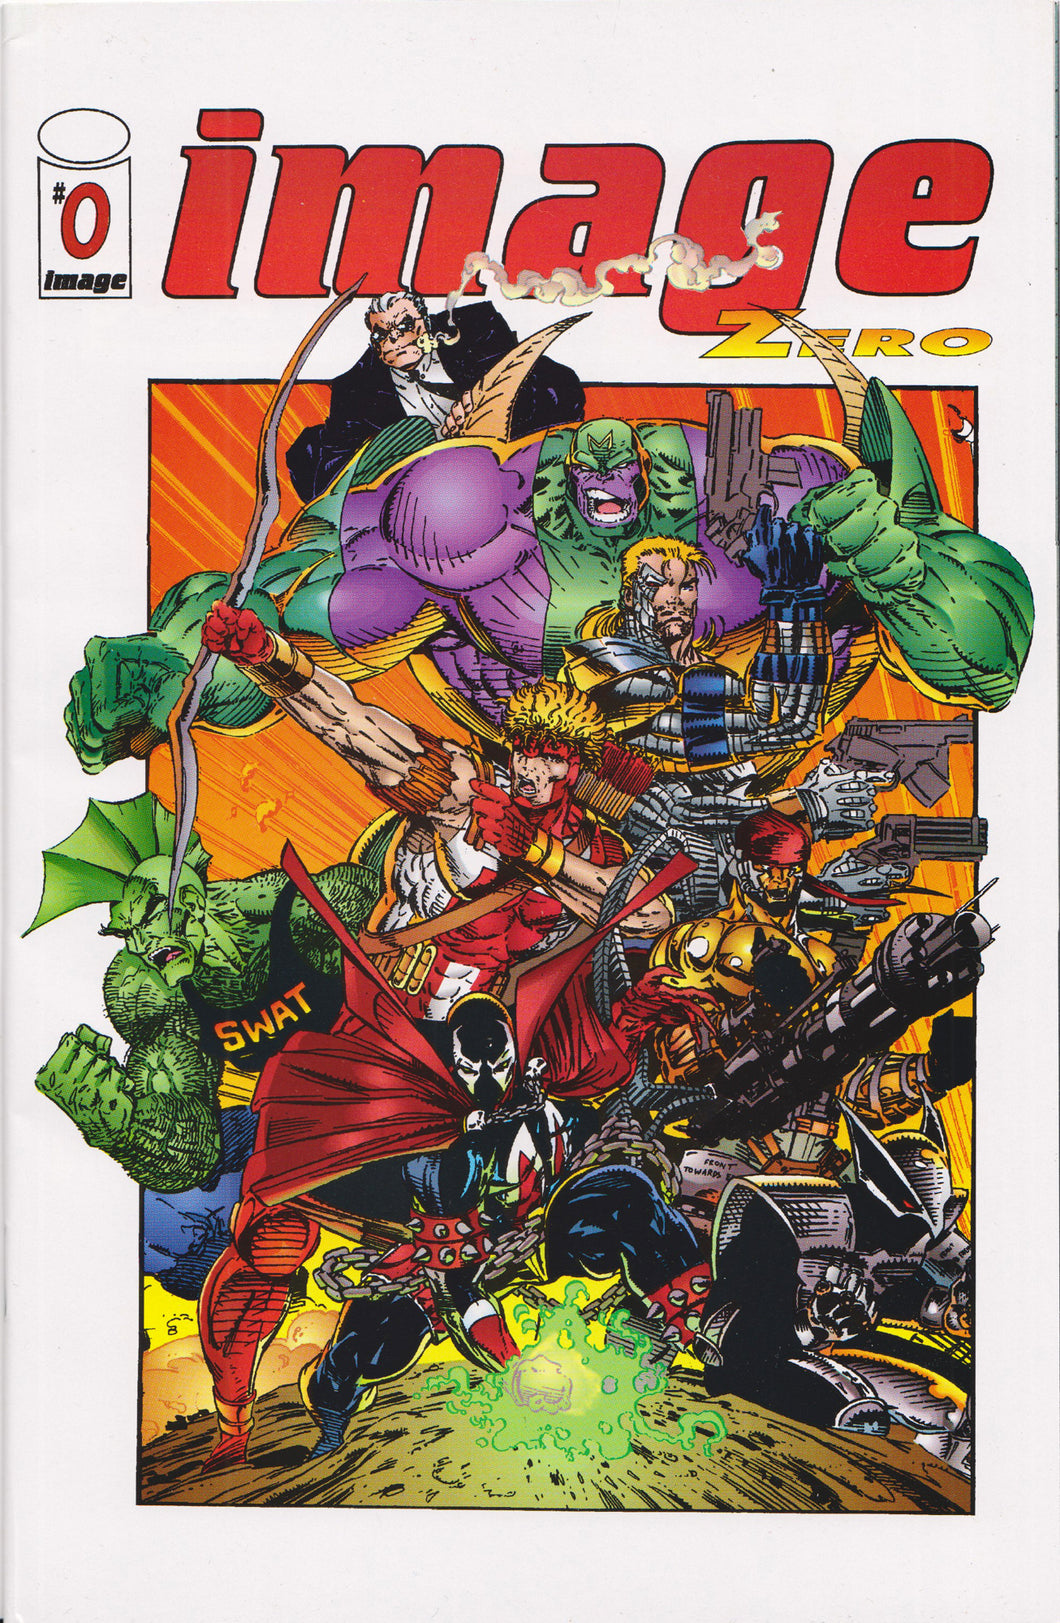 IMAGE COMICS #0 (LIEFELD/JIM LEE/TODD MCFARLANE) COMIC BOOK ~ Image Comics